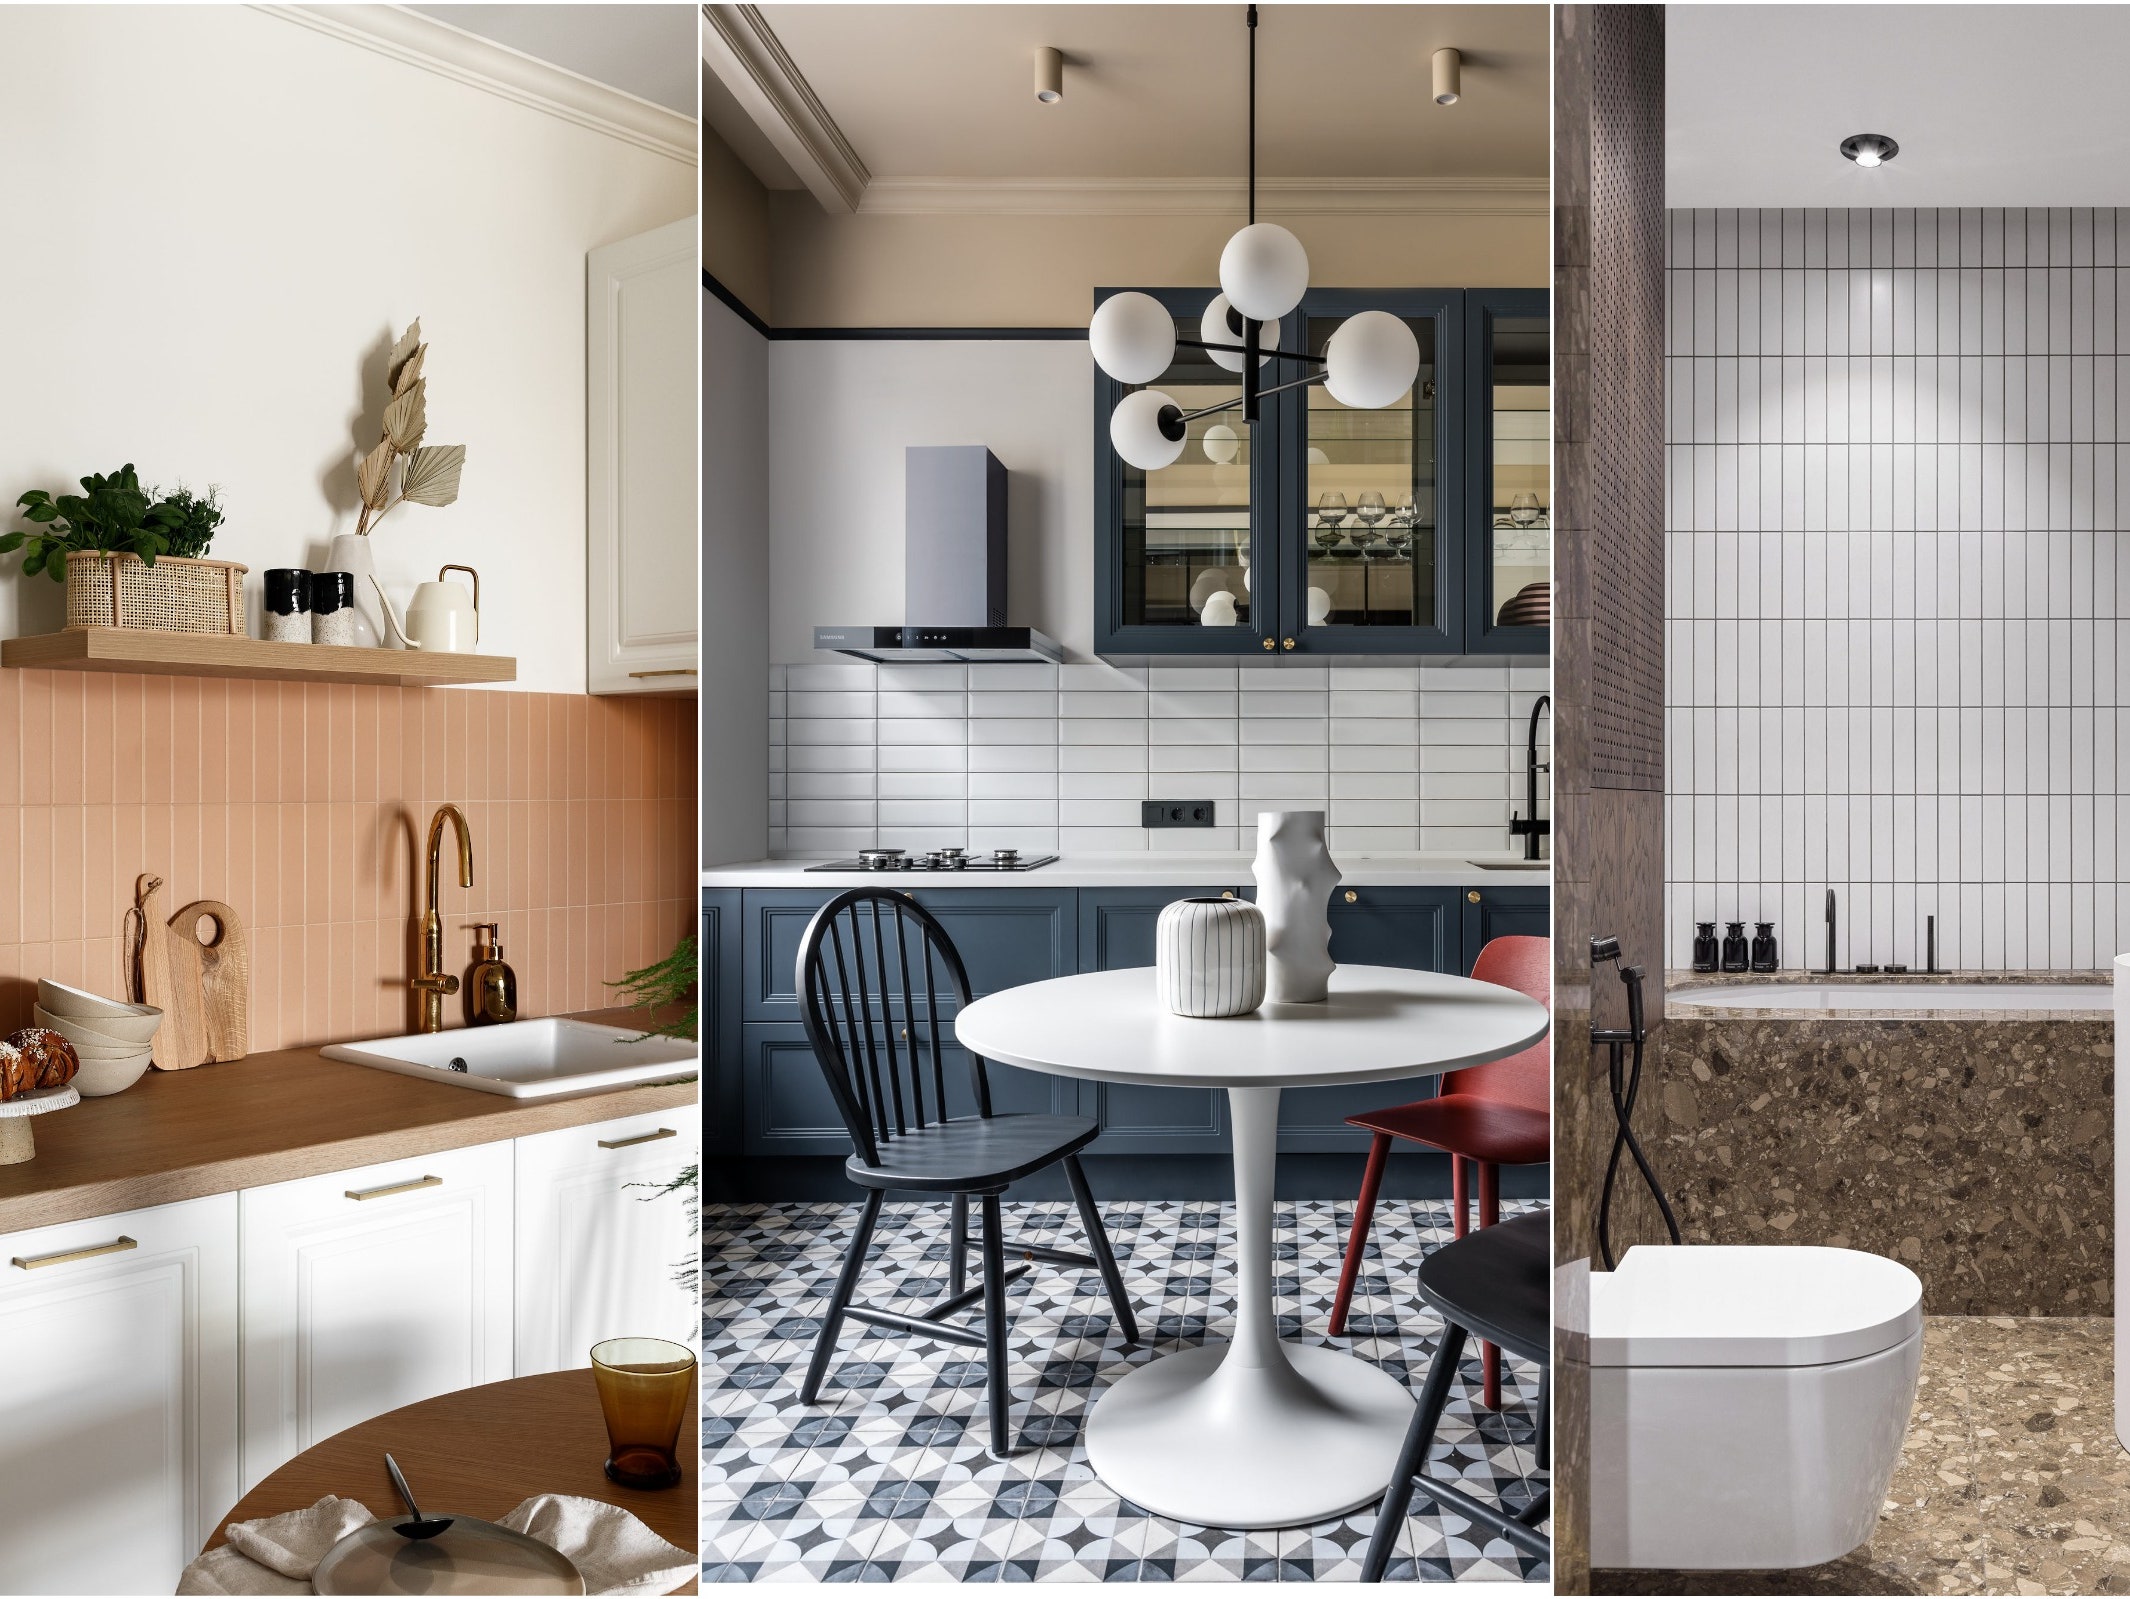 Кафель на кухню — дизайн, фото в интерьере, нестандартные решения, выбор материала